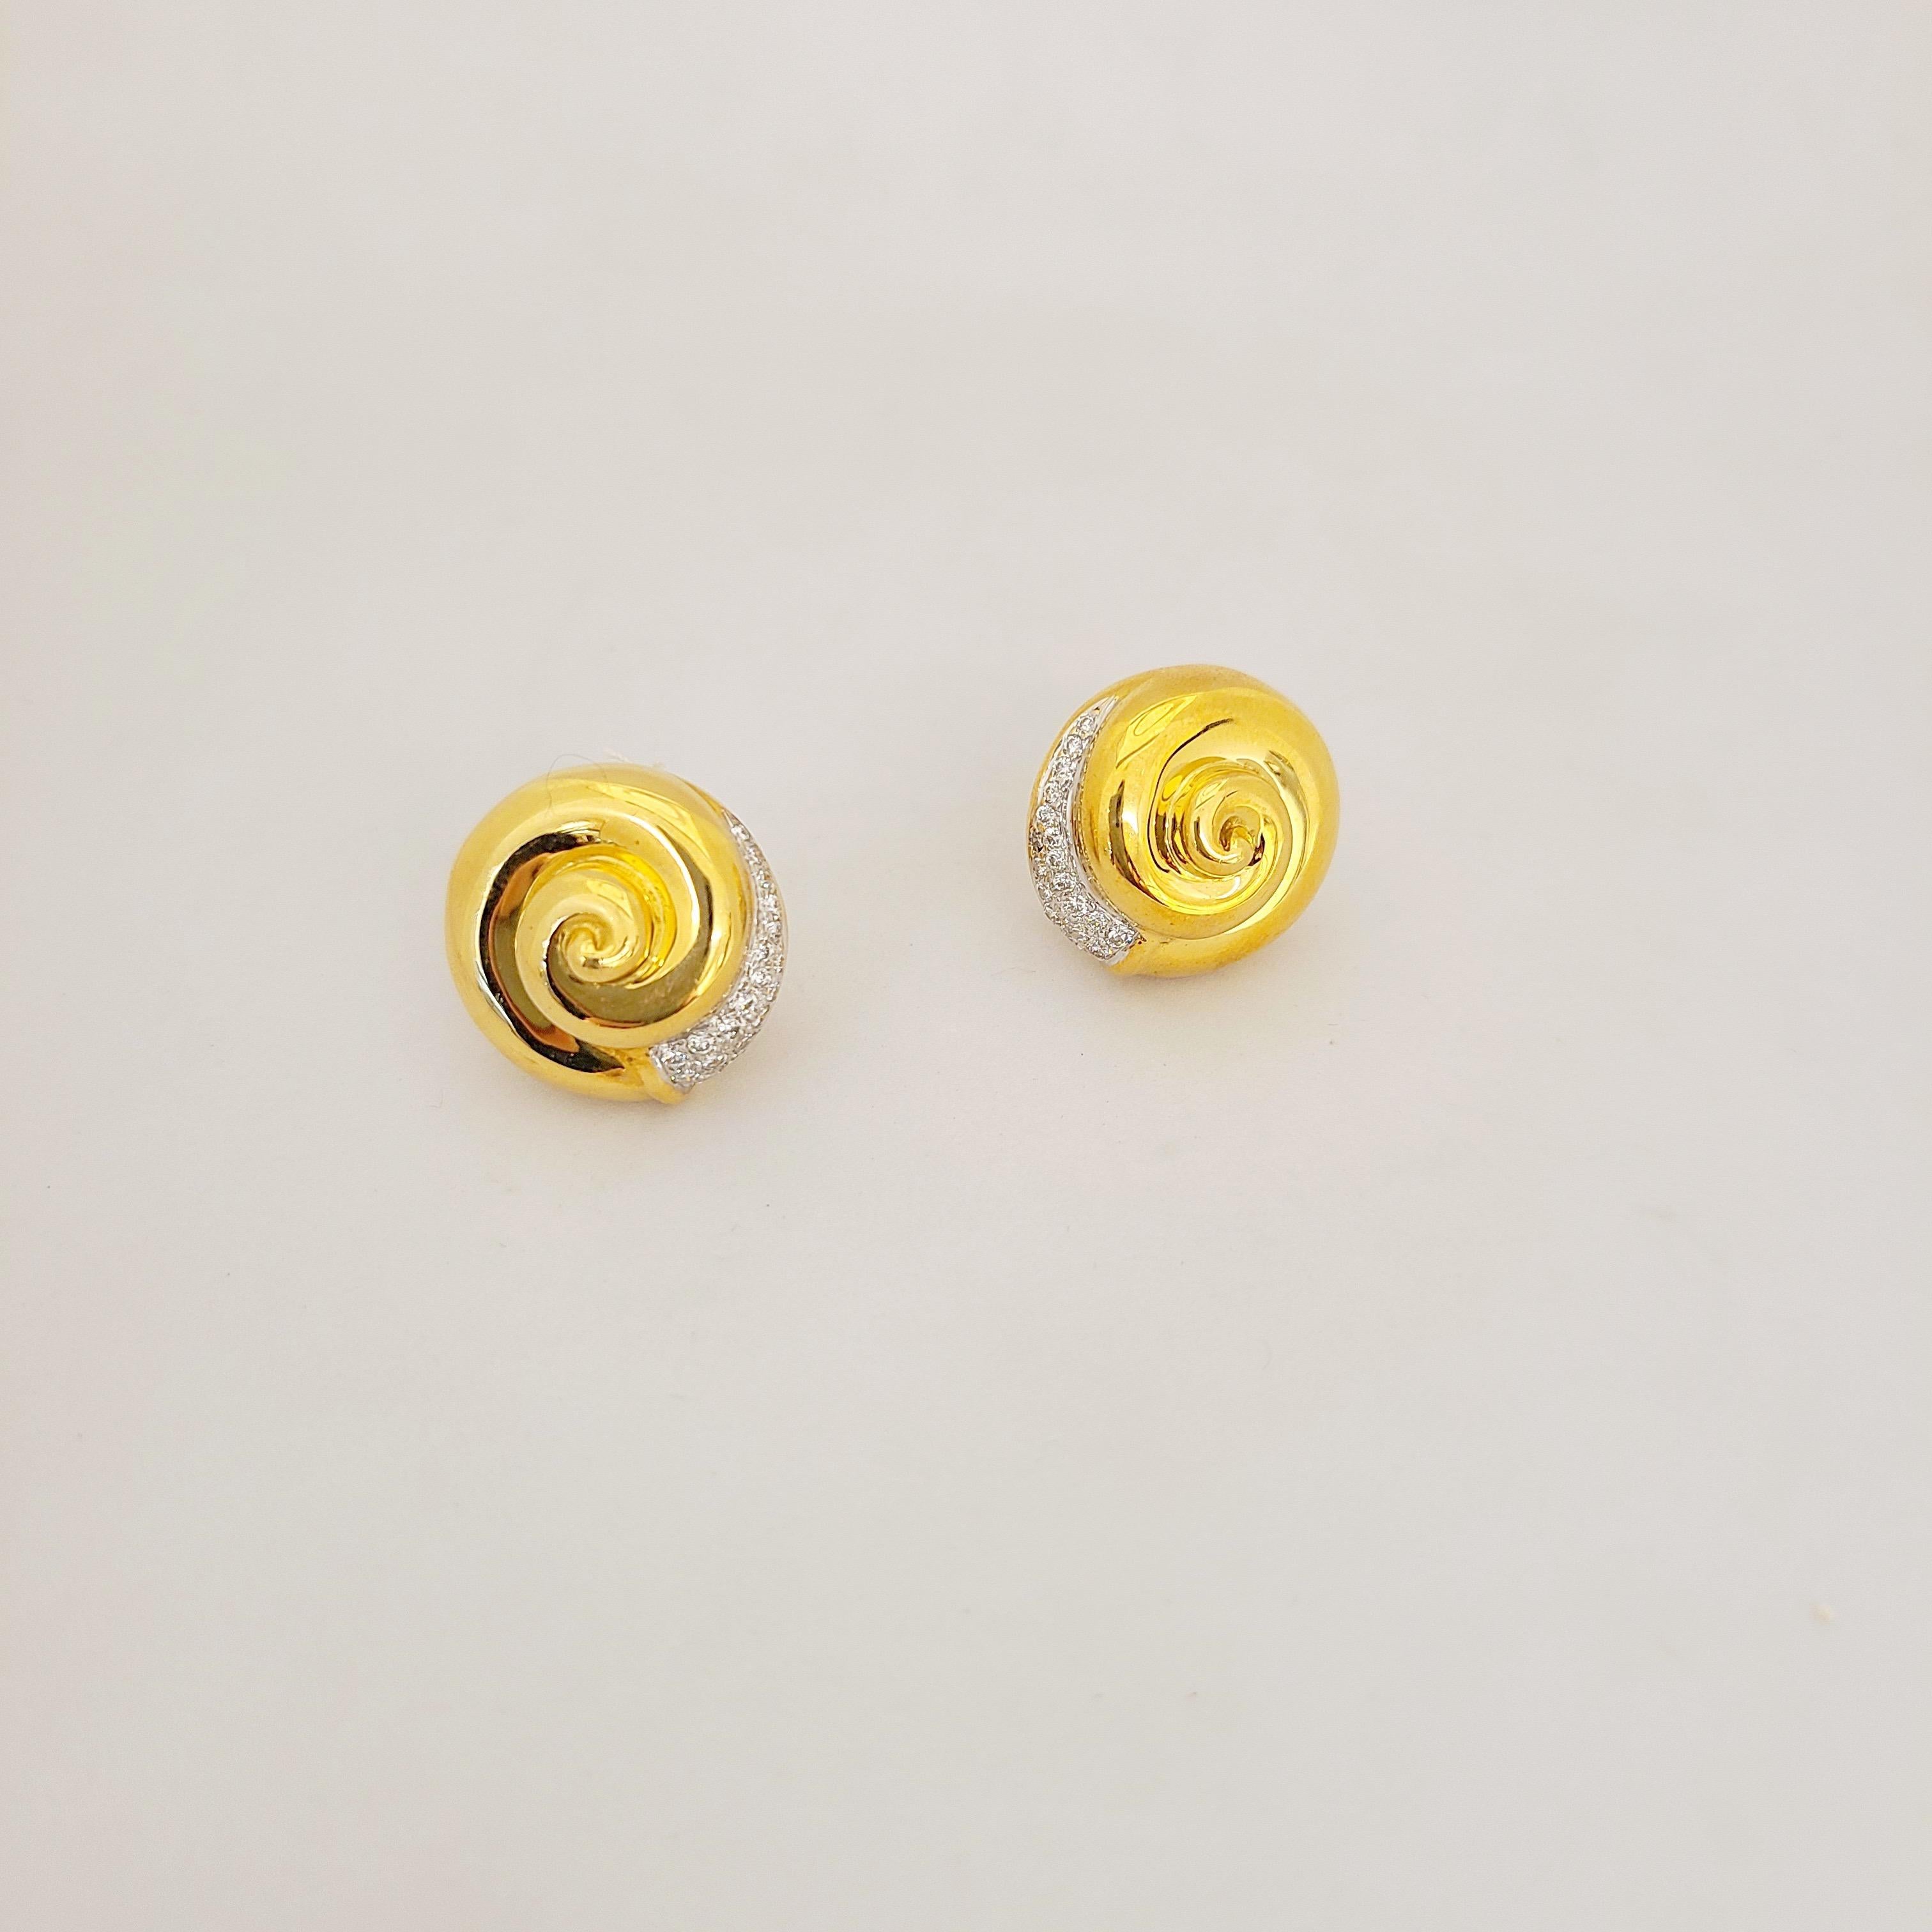 Diese Knopfohrringe aus 18 Karat Gold sind aus hochglanzpoliertem Gelbgold gefertigt und mit runden Brillanten verziert. Die Ohrringe haben einen Durchmesser von 3/4